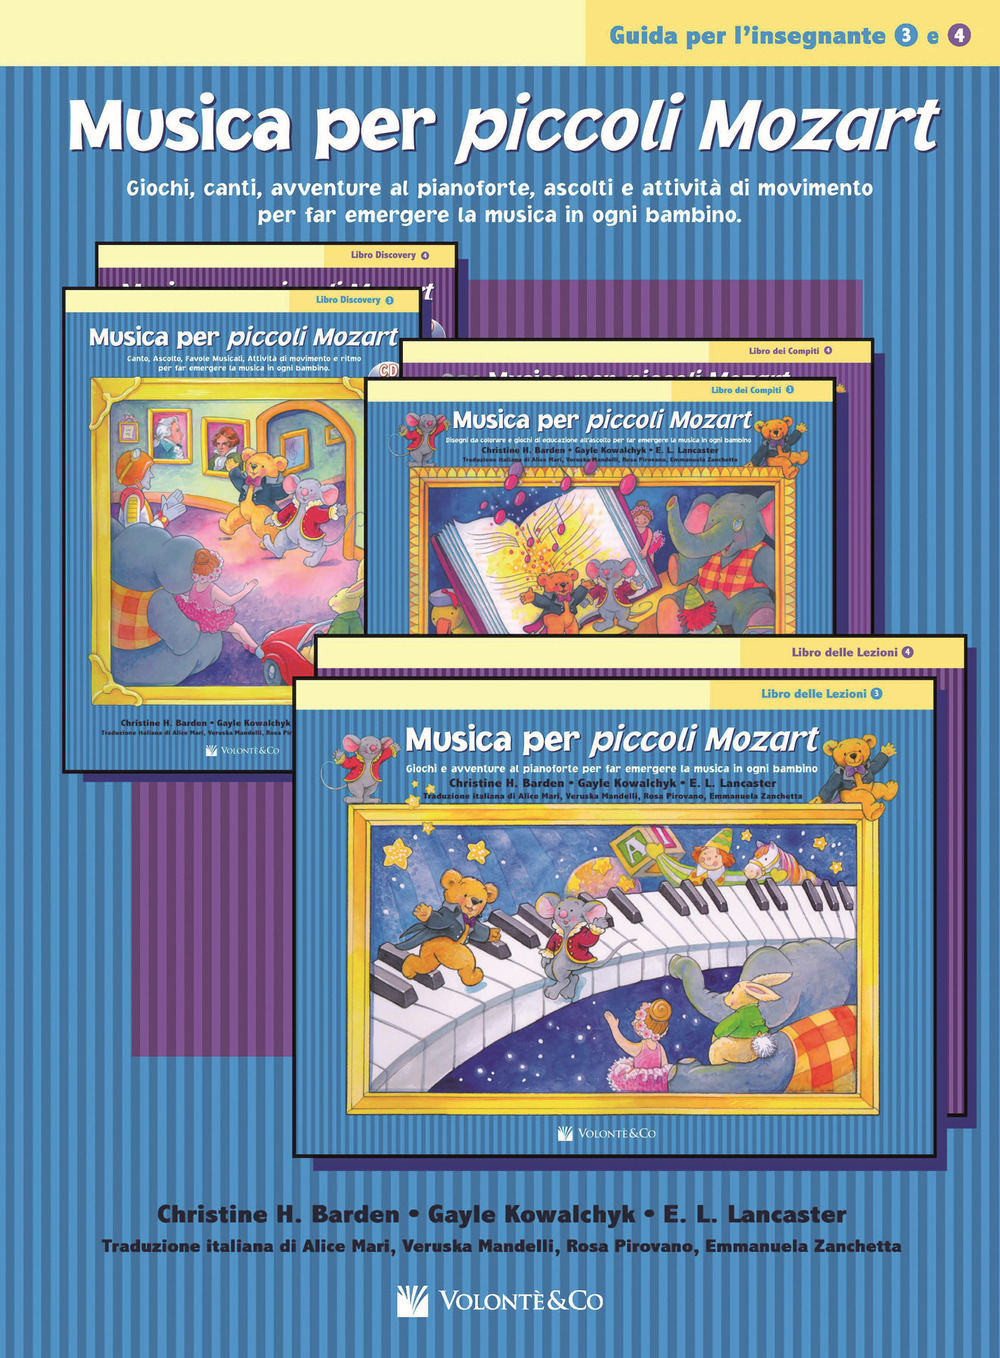 Musica per piccoli Mozart. Guida per l'insegnante 3 e 4. Giochi, canti, avventure, ascolti e attività di movimento per far emergere la musica in ogni bambino